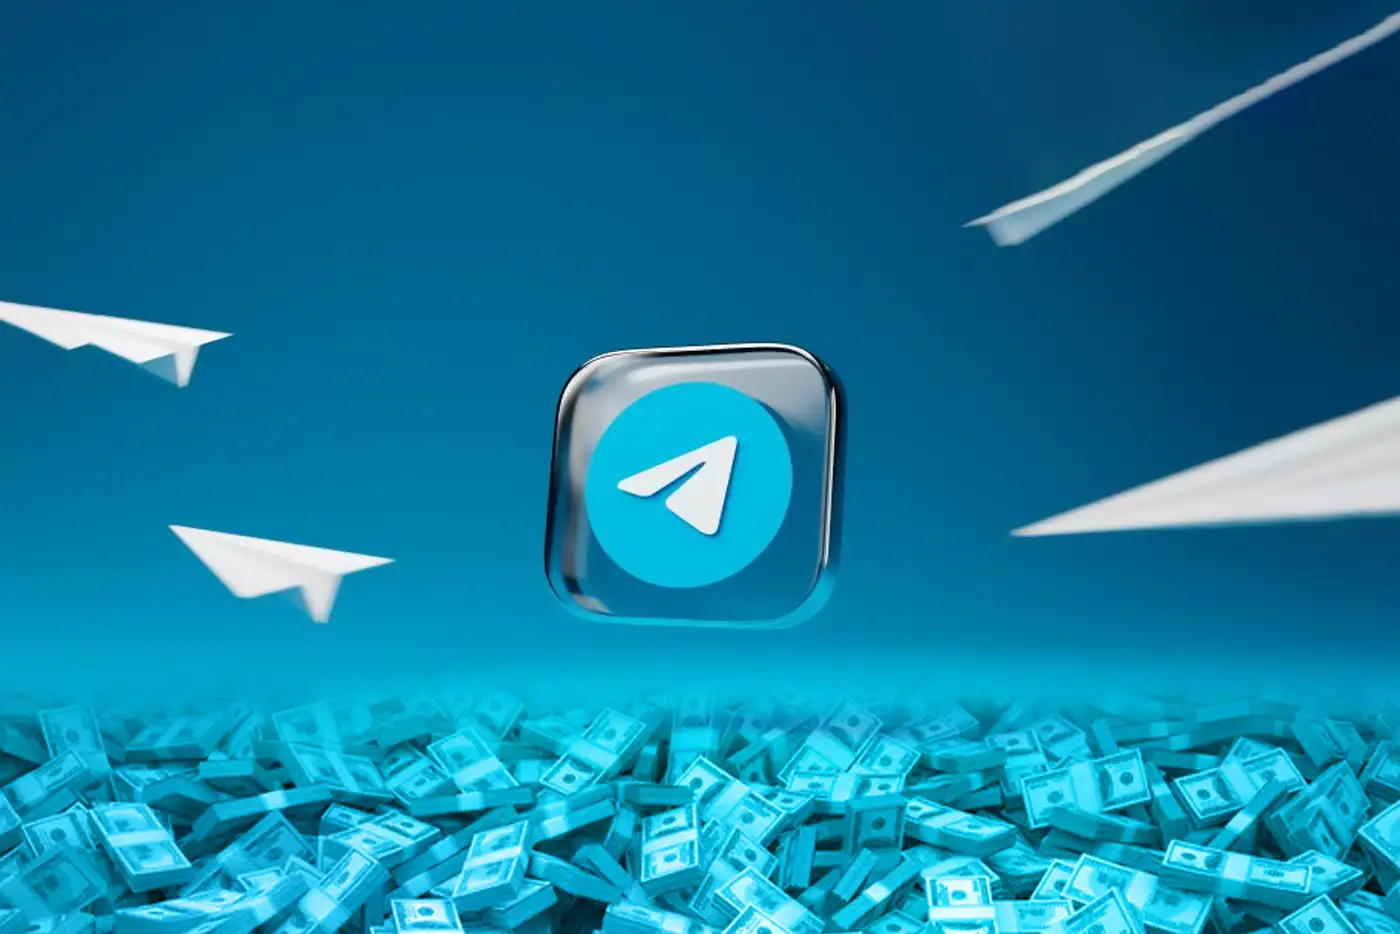 Τα βασικά χαρακτηριστικά του Telegram που σας επιτρέπουν να κερδίσετε χρήματα